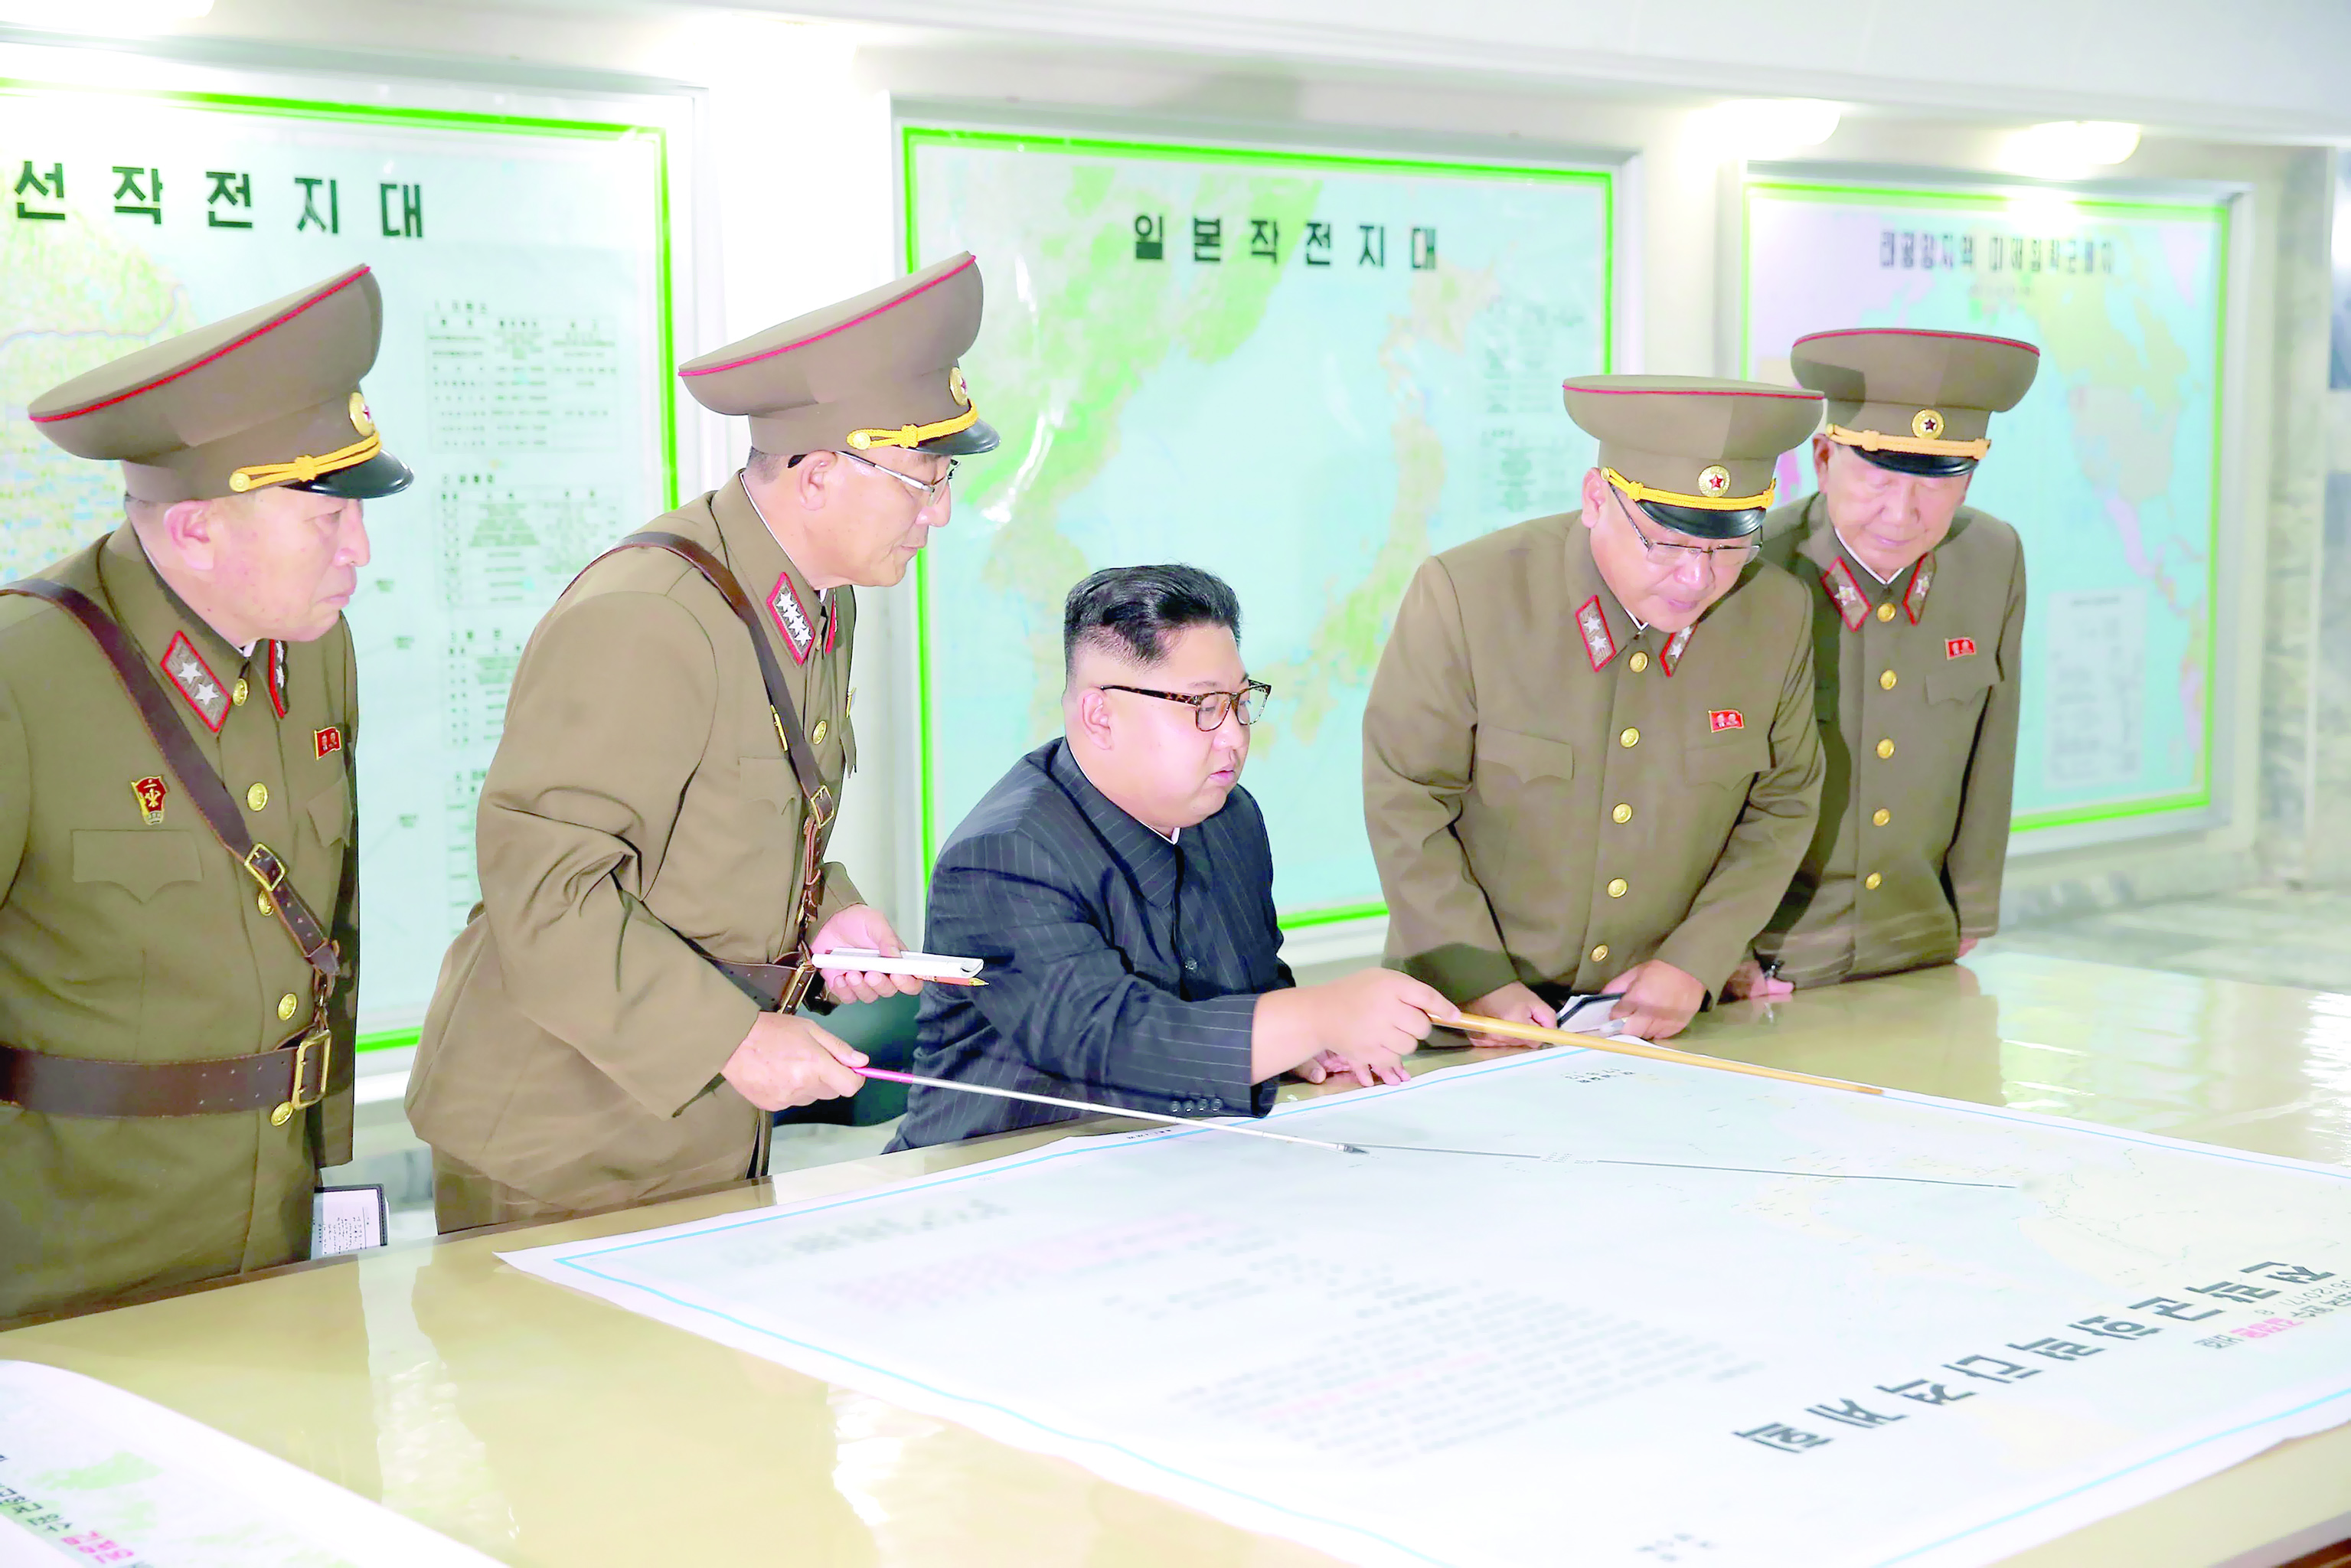 بعد تراجع بيونج يانج عن تنفيذ خطتها بإطلاق صواريخ قرب جزيرة جوام الأمريكيةمؤشرات على انحسار التوتر في شبه الجزيرة الكورية